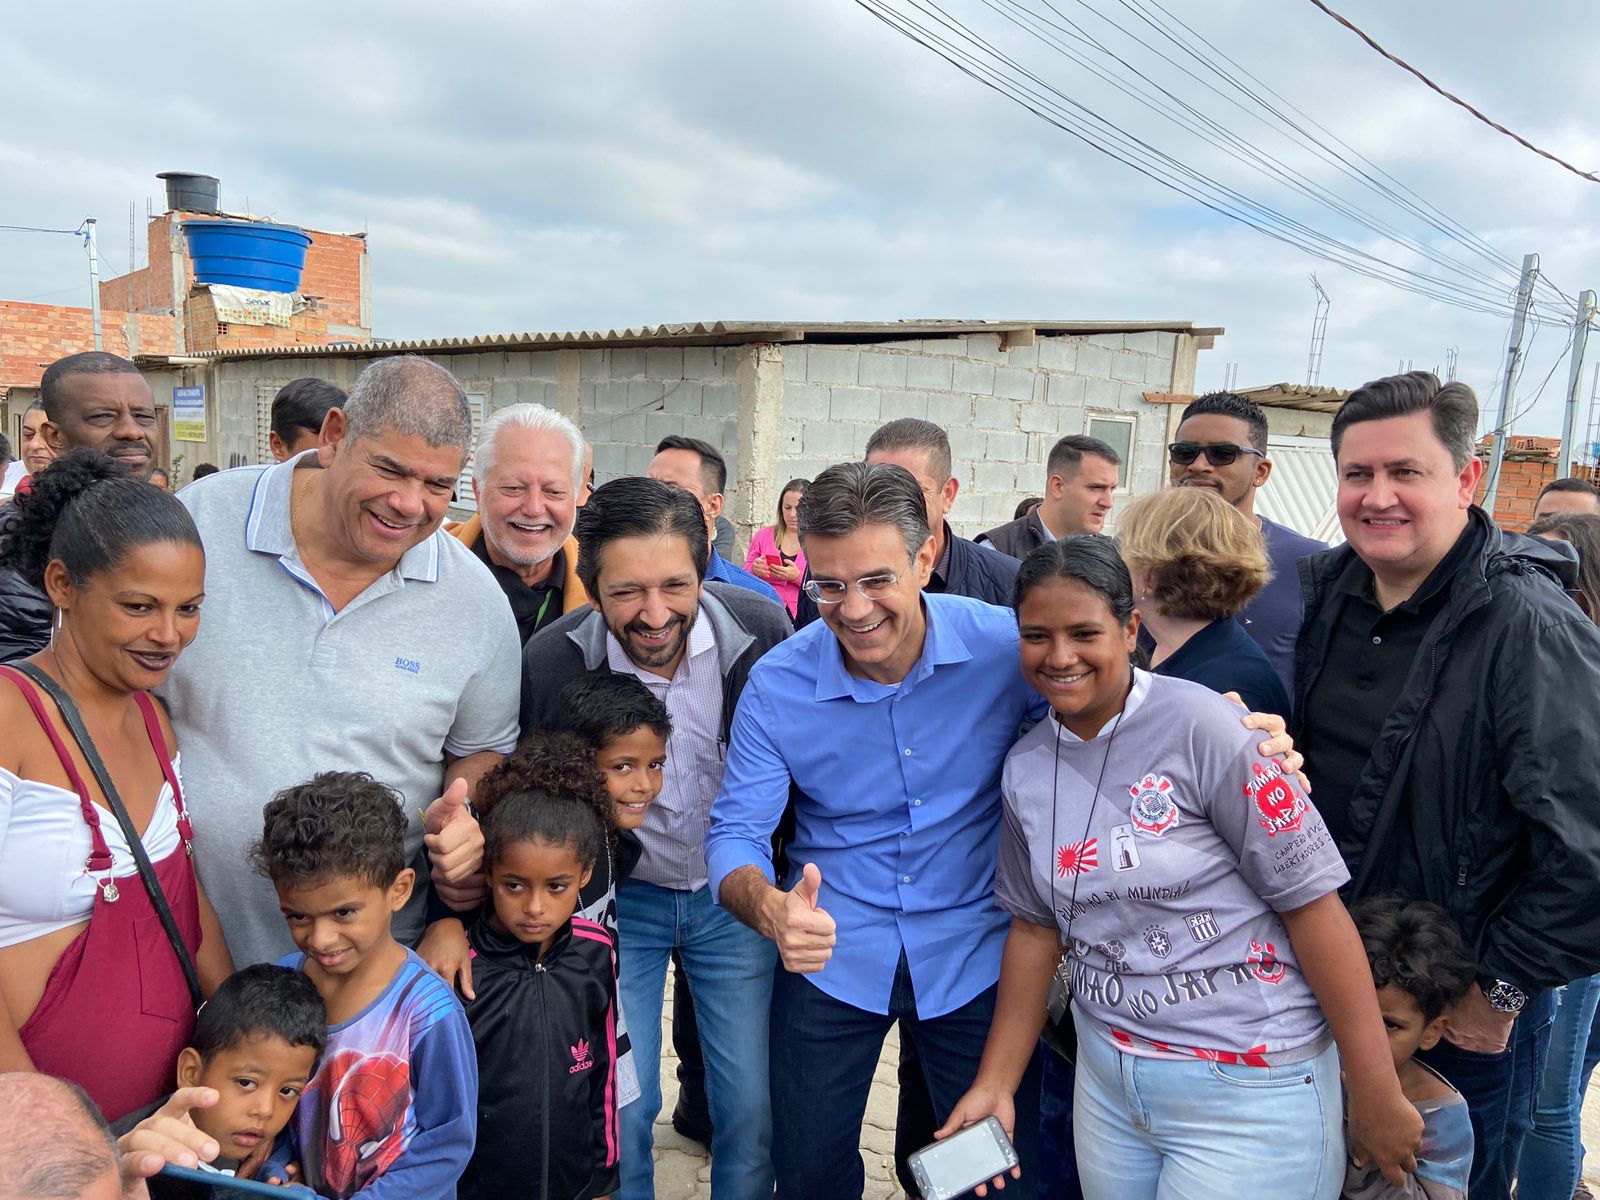 Milton Leite, Ricardo Nunes, Rodrigo Garcia e Alex Peixe posam para a foto junto com uma família composta pela mãe e mais 5 crianças